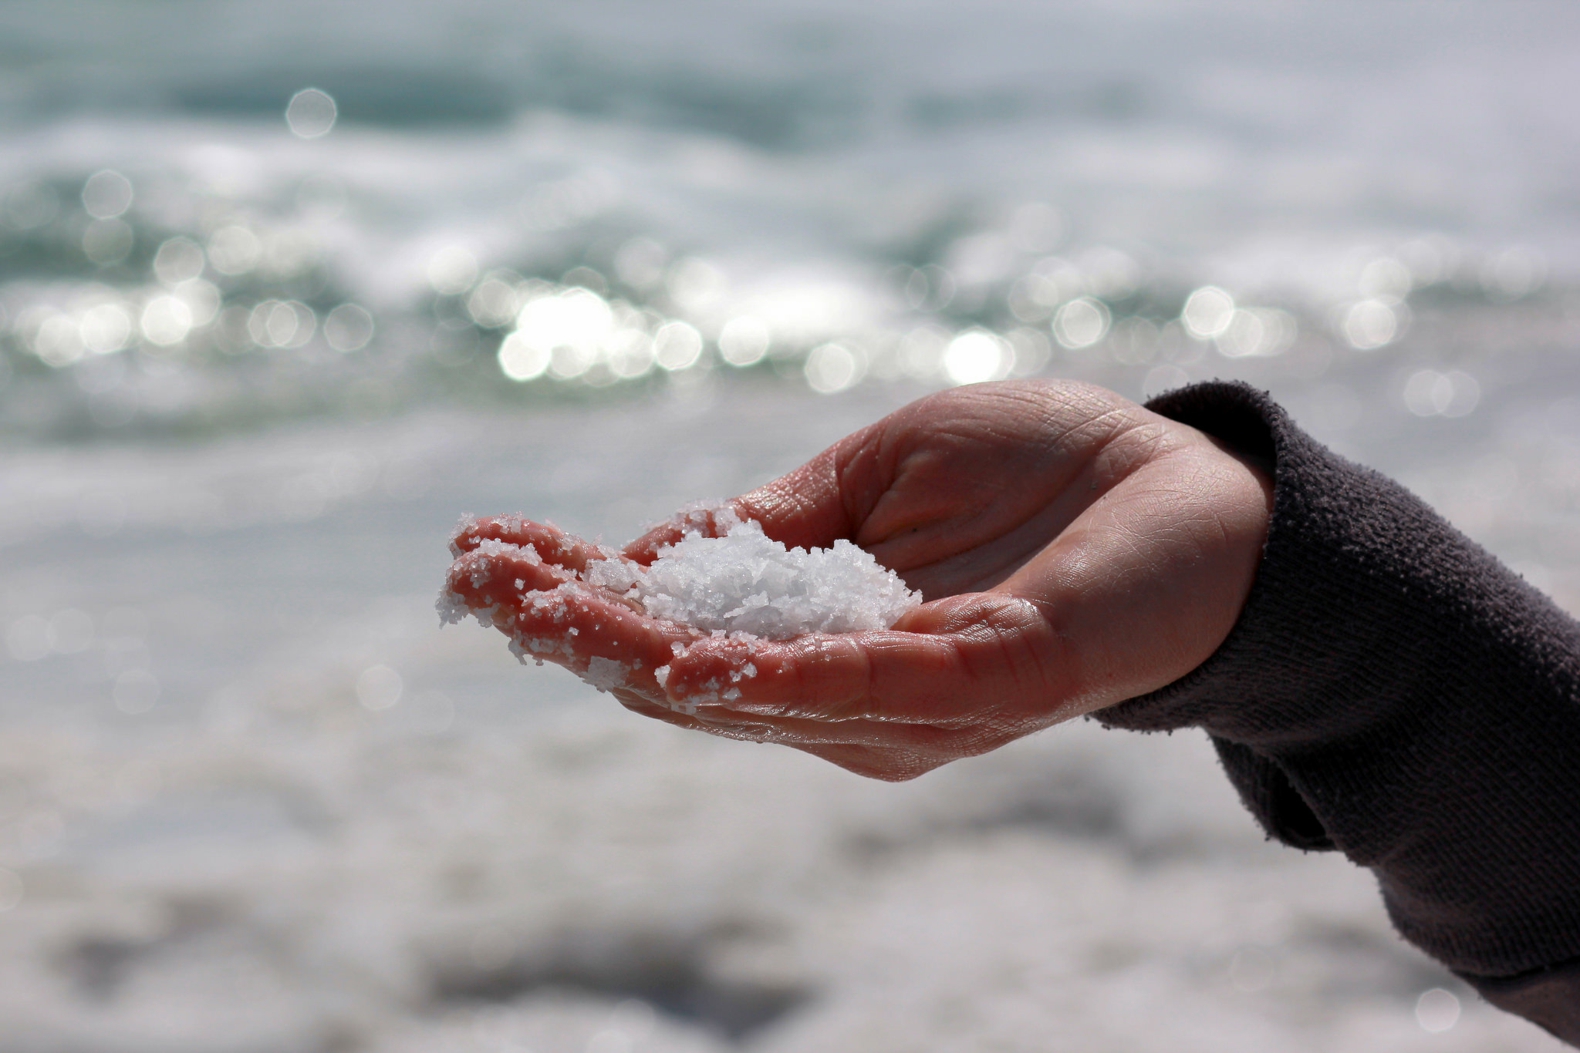 Meersalz Vorteile Gesundheit Hautpflege Sommer Salzpeeling Handcreme Hausmittel